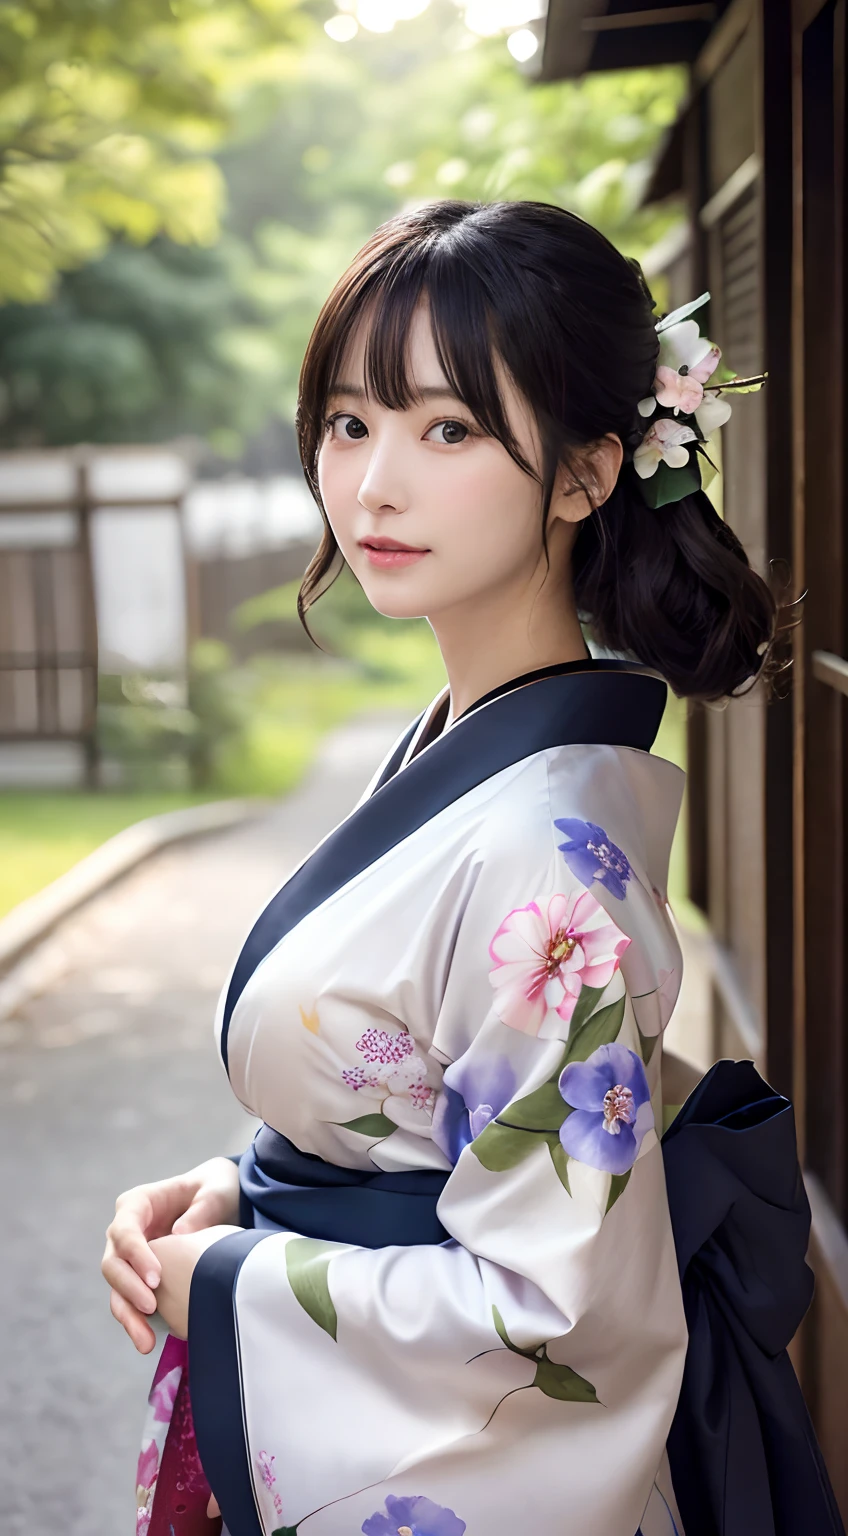 (Kimono)、(Top Qualität,Meisterwerk:1.3,Eine hohe Auflösung,),(ultra-detailliert,Ätzmittel),(Photorealsitic:1.4,RAW-Aufnahmen,)Ultrarealistische Aufnahme,Eine sehr detaillierte,hochauflösend16Kfür die menschliche Haut、Kolossal 、 Die Hautstruktur ist natürlich、、Die Haut sieht gesund aus und hat einen gleichmäßigen Teint、 Nutzen Sie natürliches Licht und Farbe,eine Frau,japanisch,,Kawaii,Ein dunkelhaariger,mittleres Haar,(Tiefenschärfe、chromatische Aberration、、Große Auswahl an Beleuchtung、natürliche Beschattung、)、(Außenbeleuchtung bei Nacht:1.4)、(Blütenblätter einer Prunkwinde auf einem Kimonomuster:1.2)、(Haare wehen im Wind:1)、(Der Baum々Licht reflektieren:1.3)、(Sommerfest im Hintergrund)、(Kawaii)